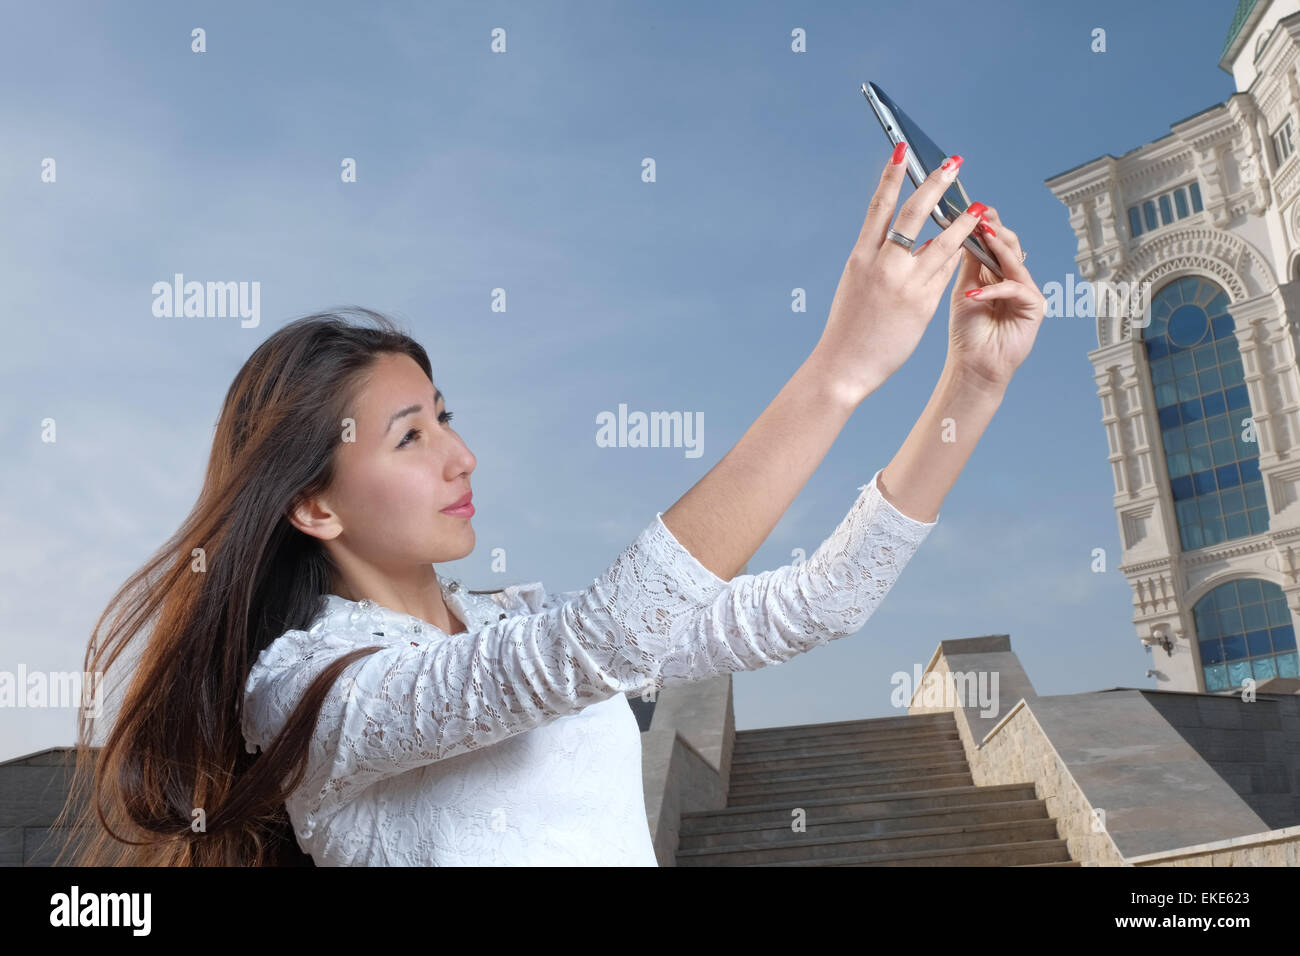 Junge japanische Frauen mit langen Haaren Selfie im City Park Afainst Schritte zu tun und klaren blauen Himmel mit leichten Dunst, Exemplar am Himmel Stockfoto